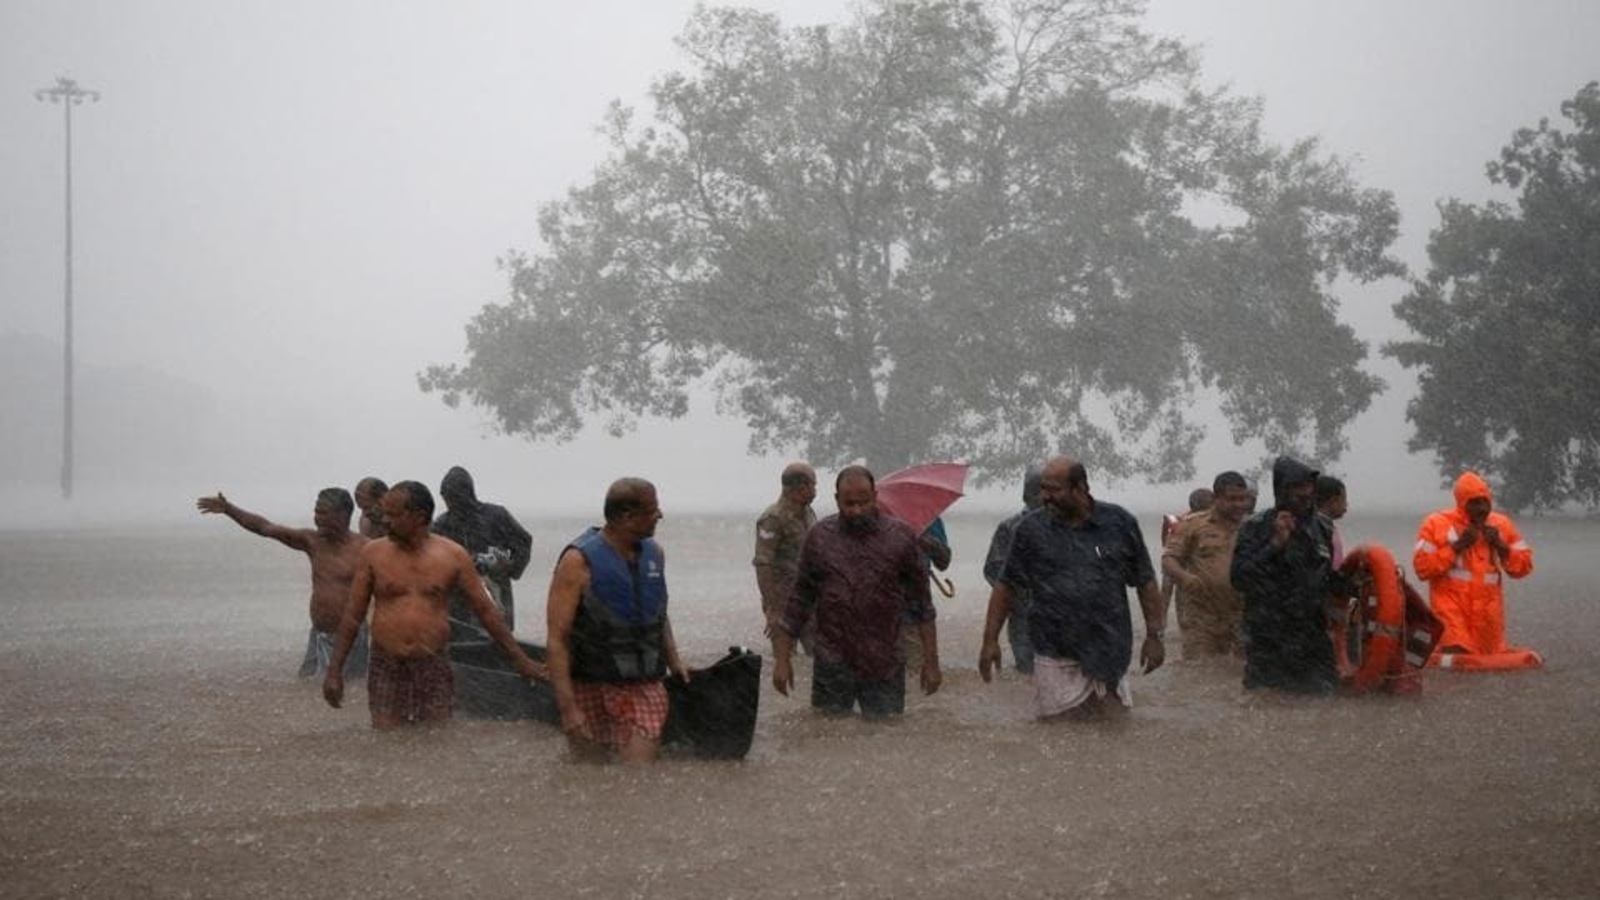 CUET UG postponed in Kerala due to heavy rains